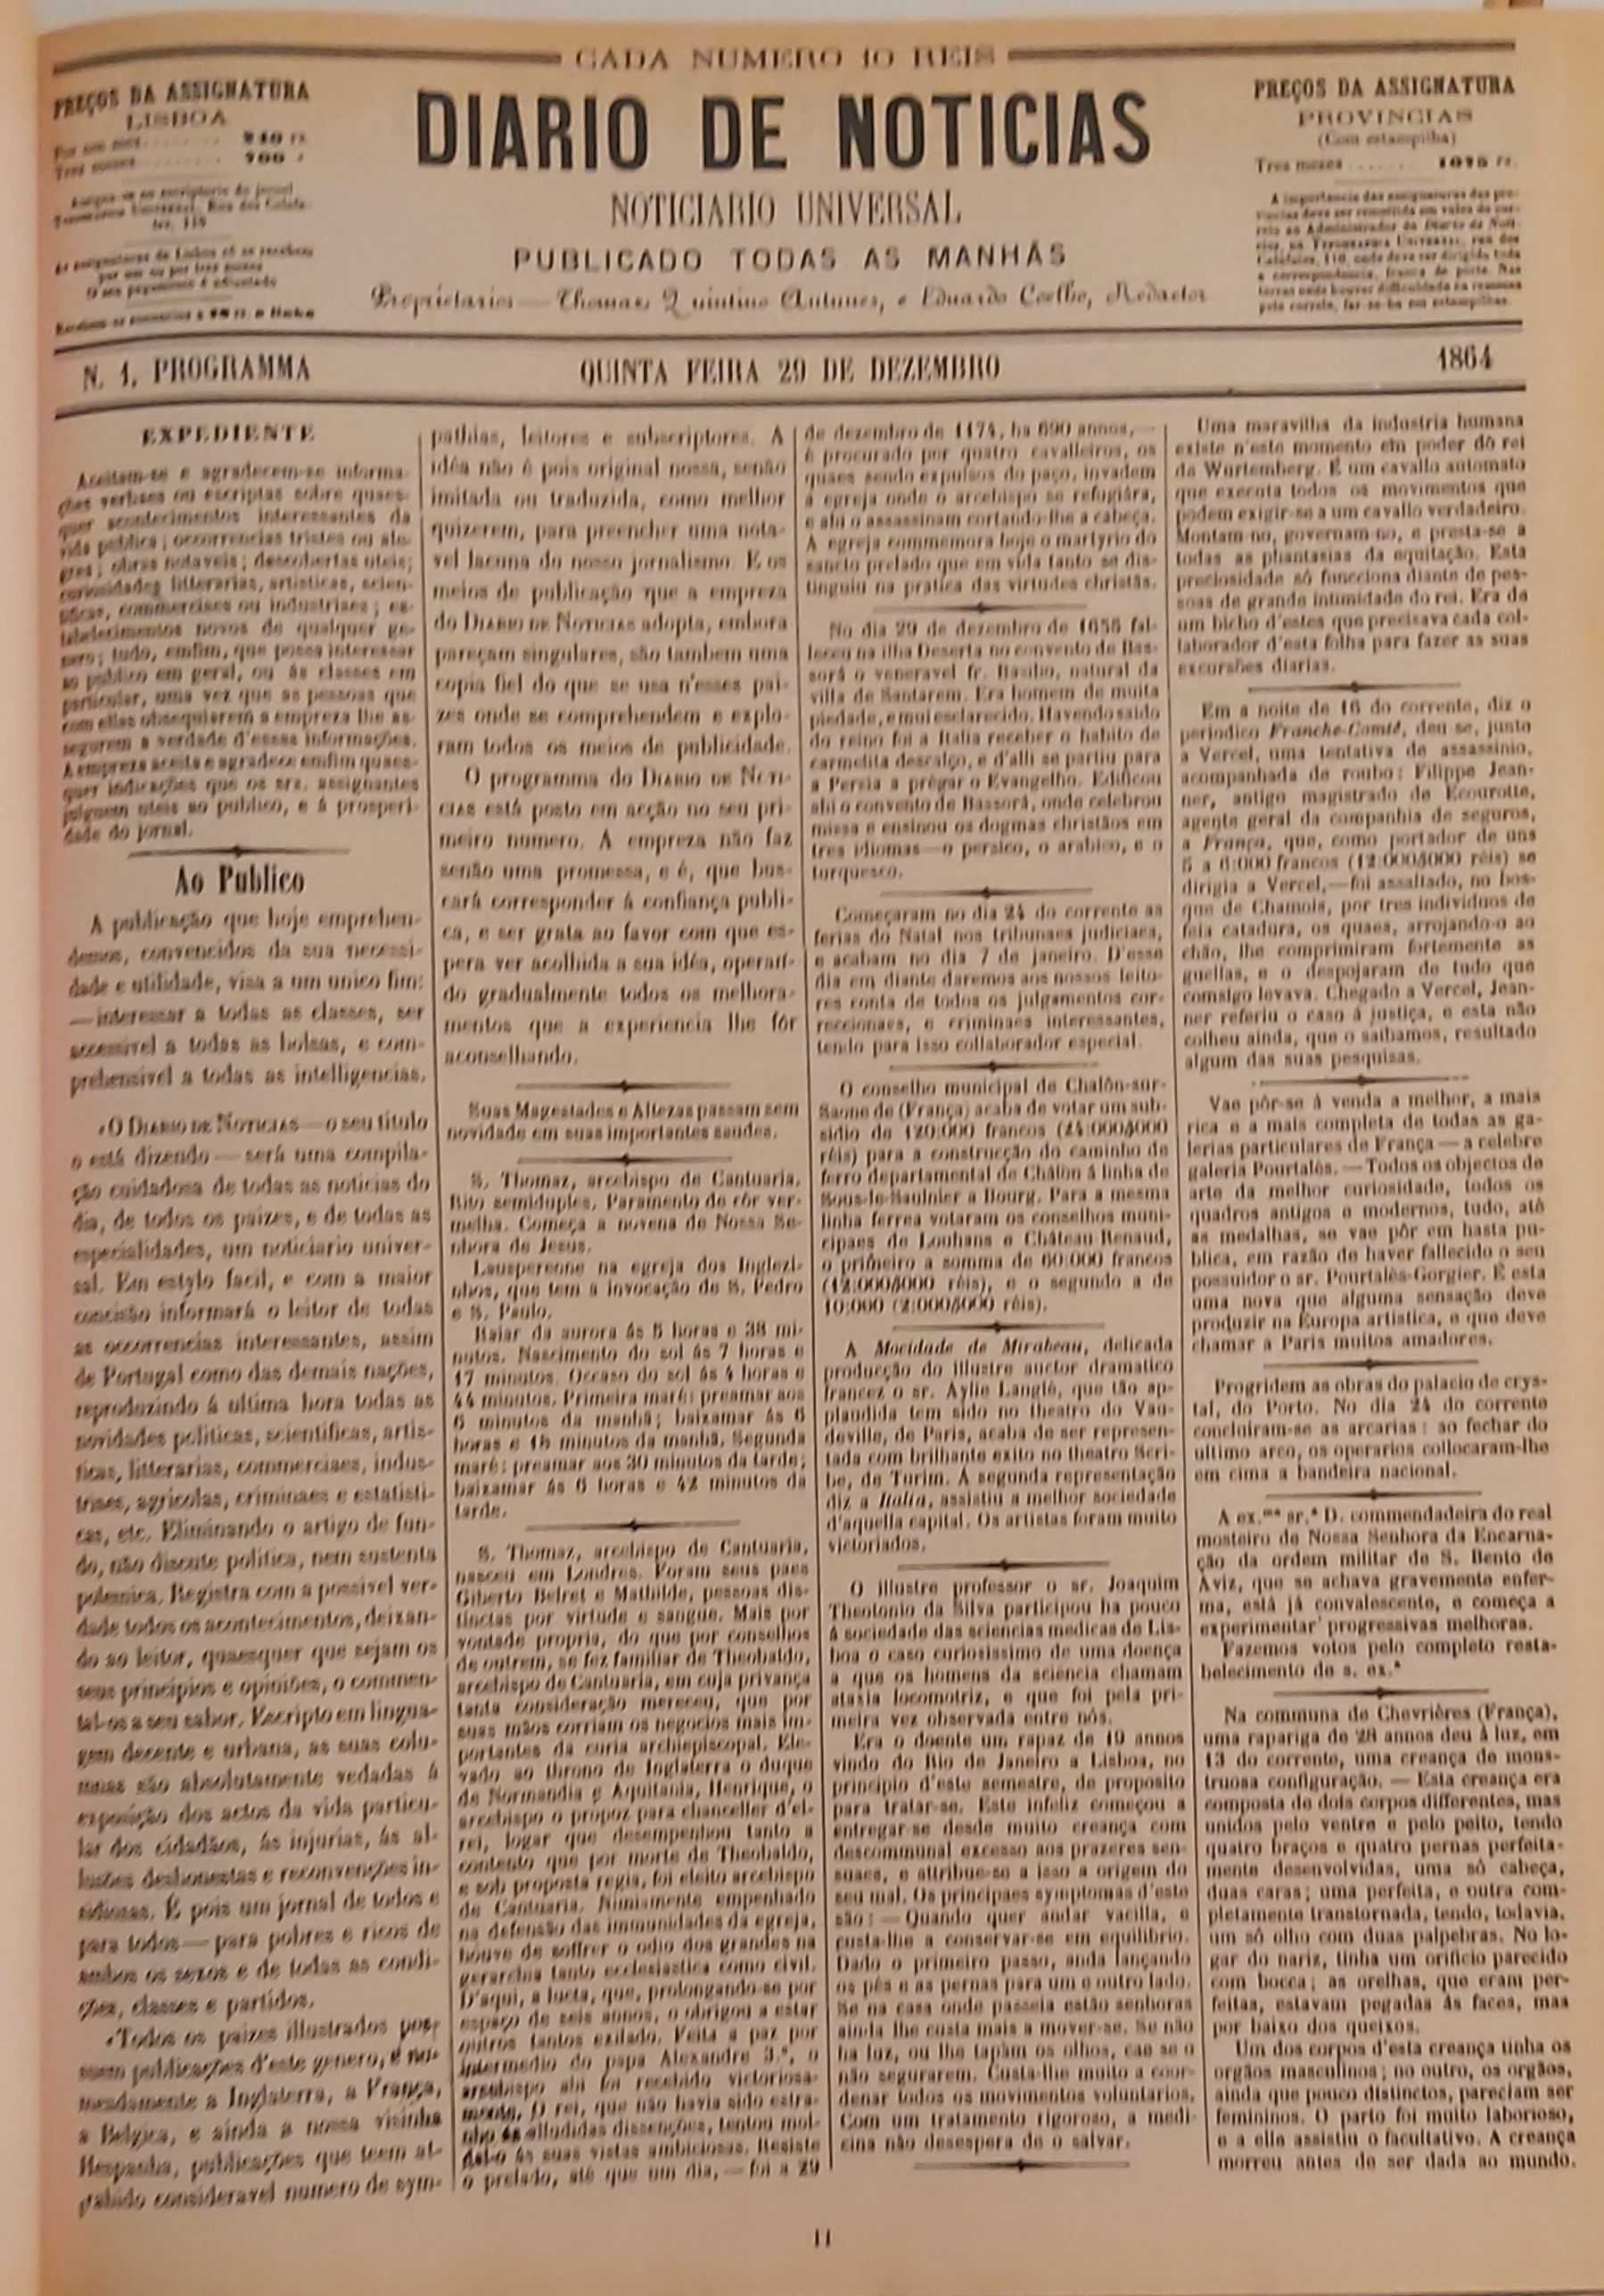 1ª Página dos Diários de Notícias de 1864 a 1994